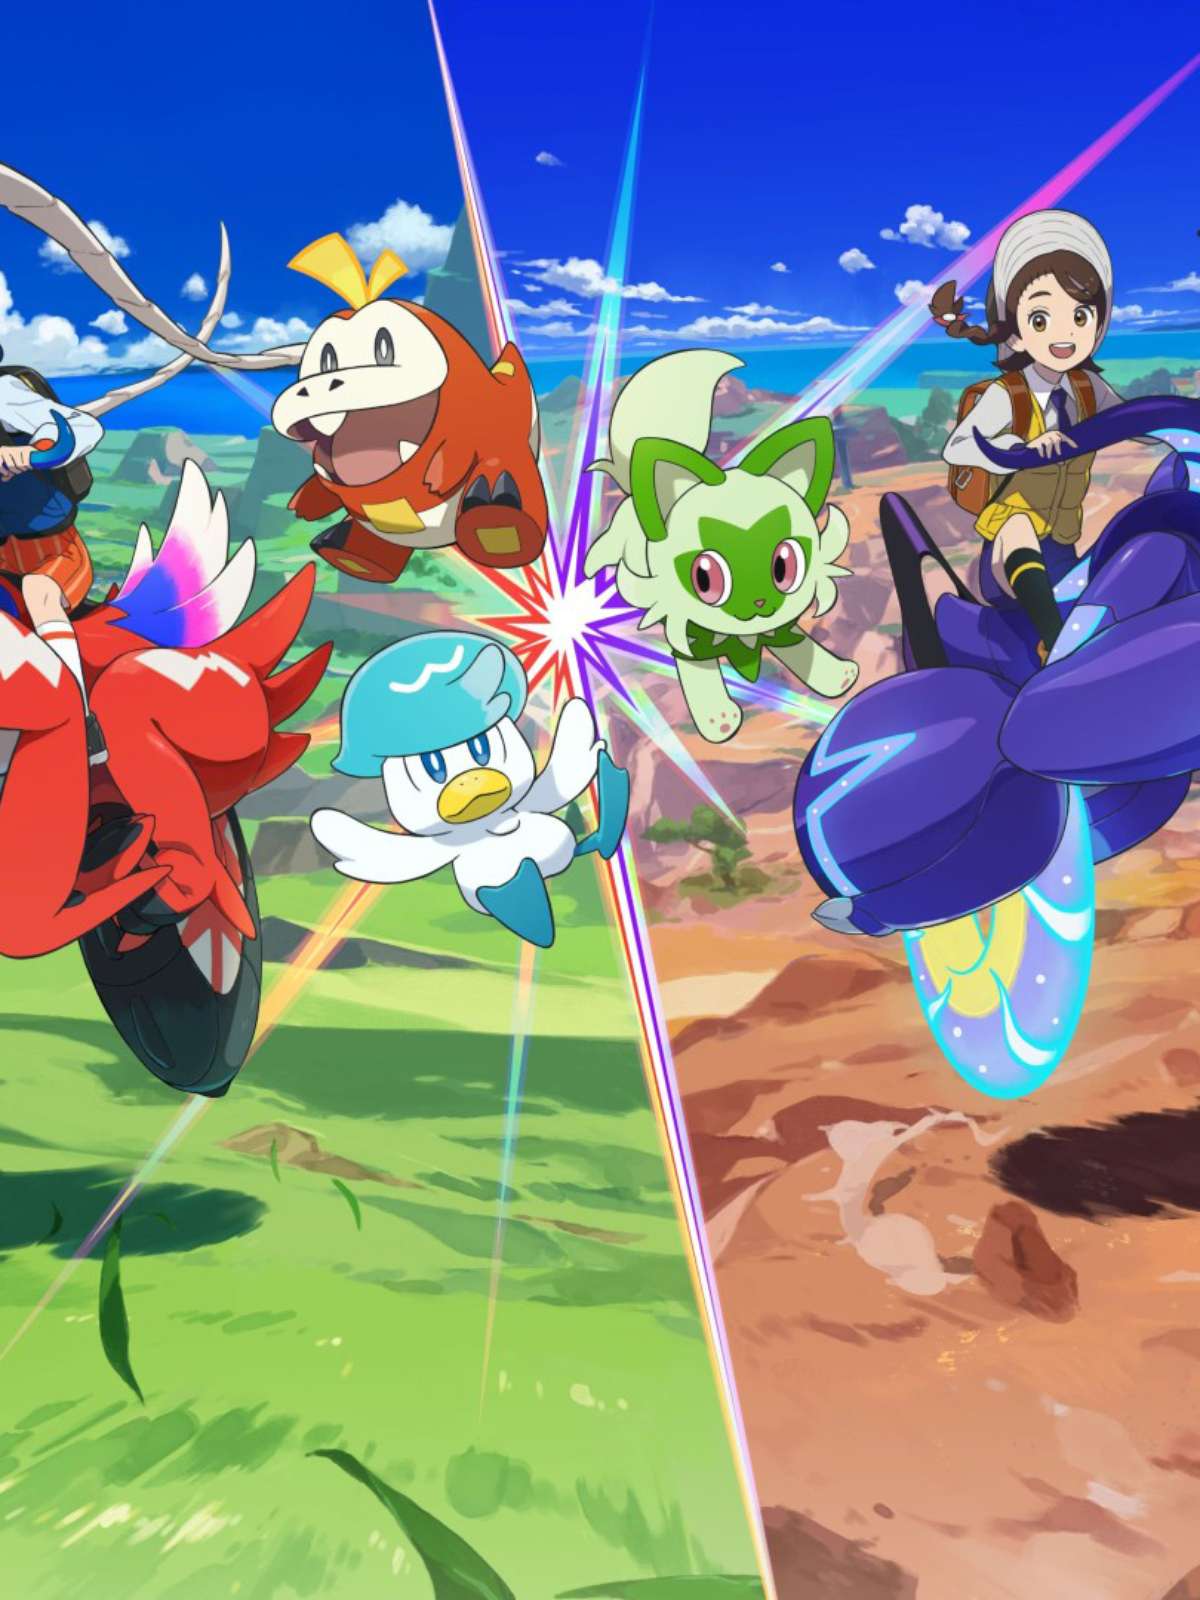 Celebração do Campeonato Mundial Pokémon 2023